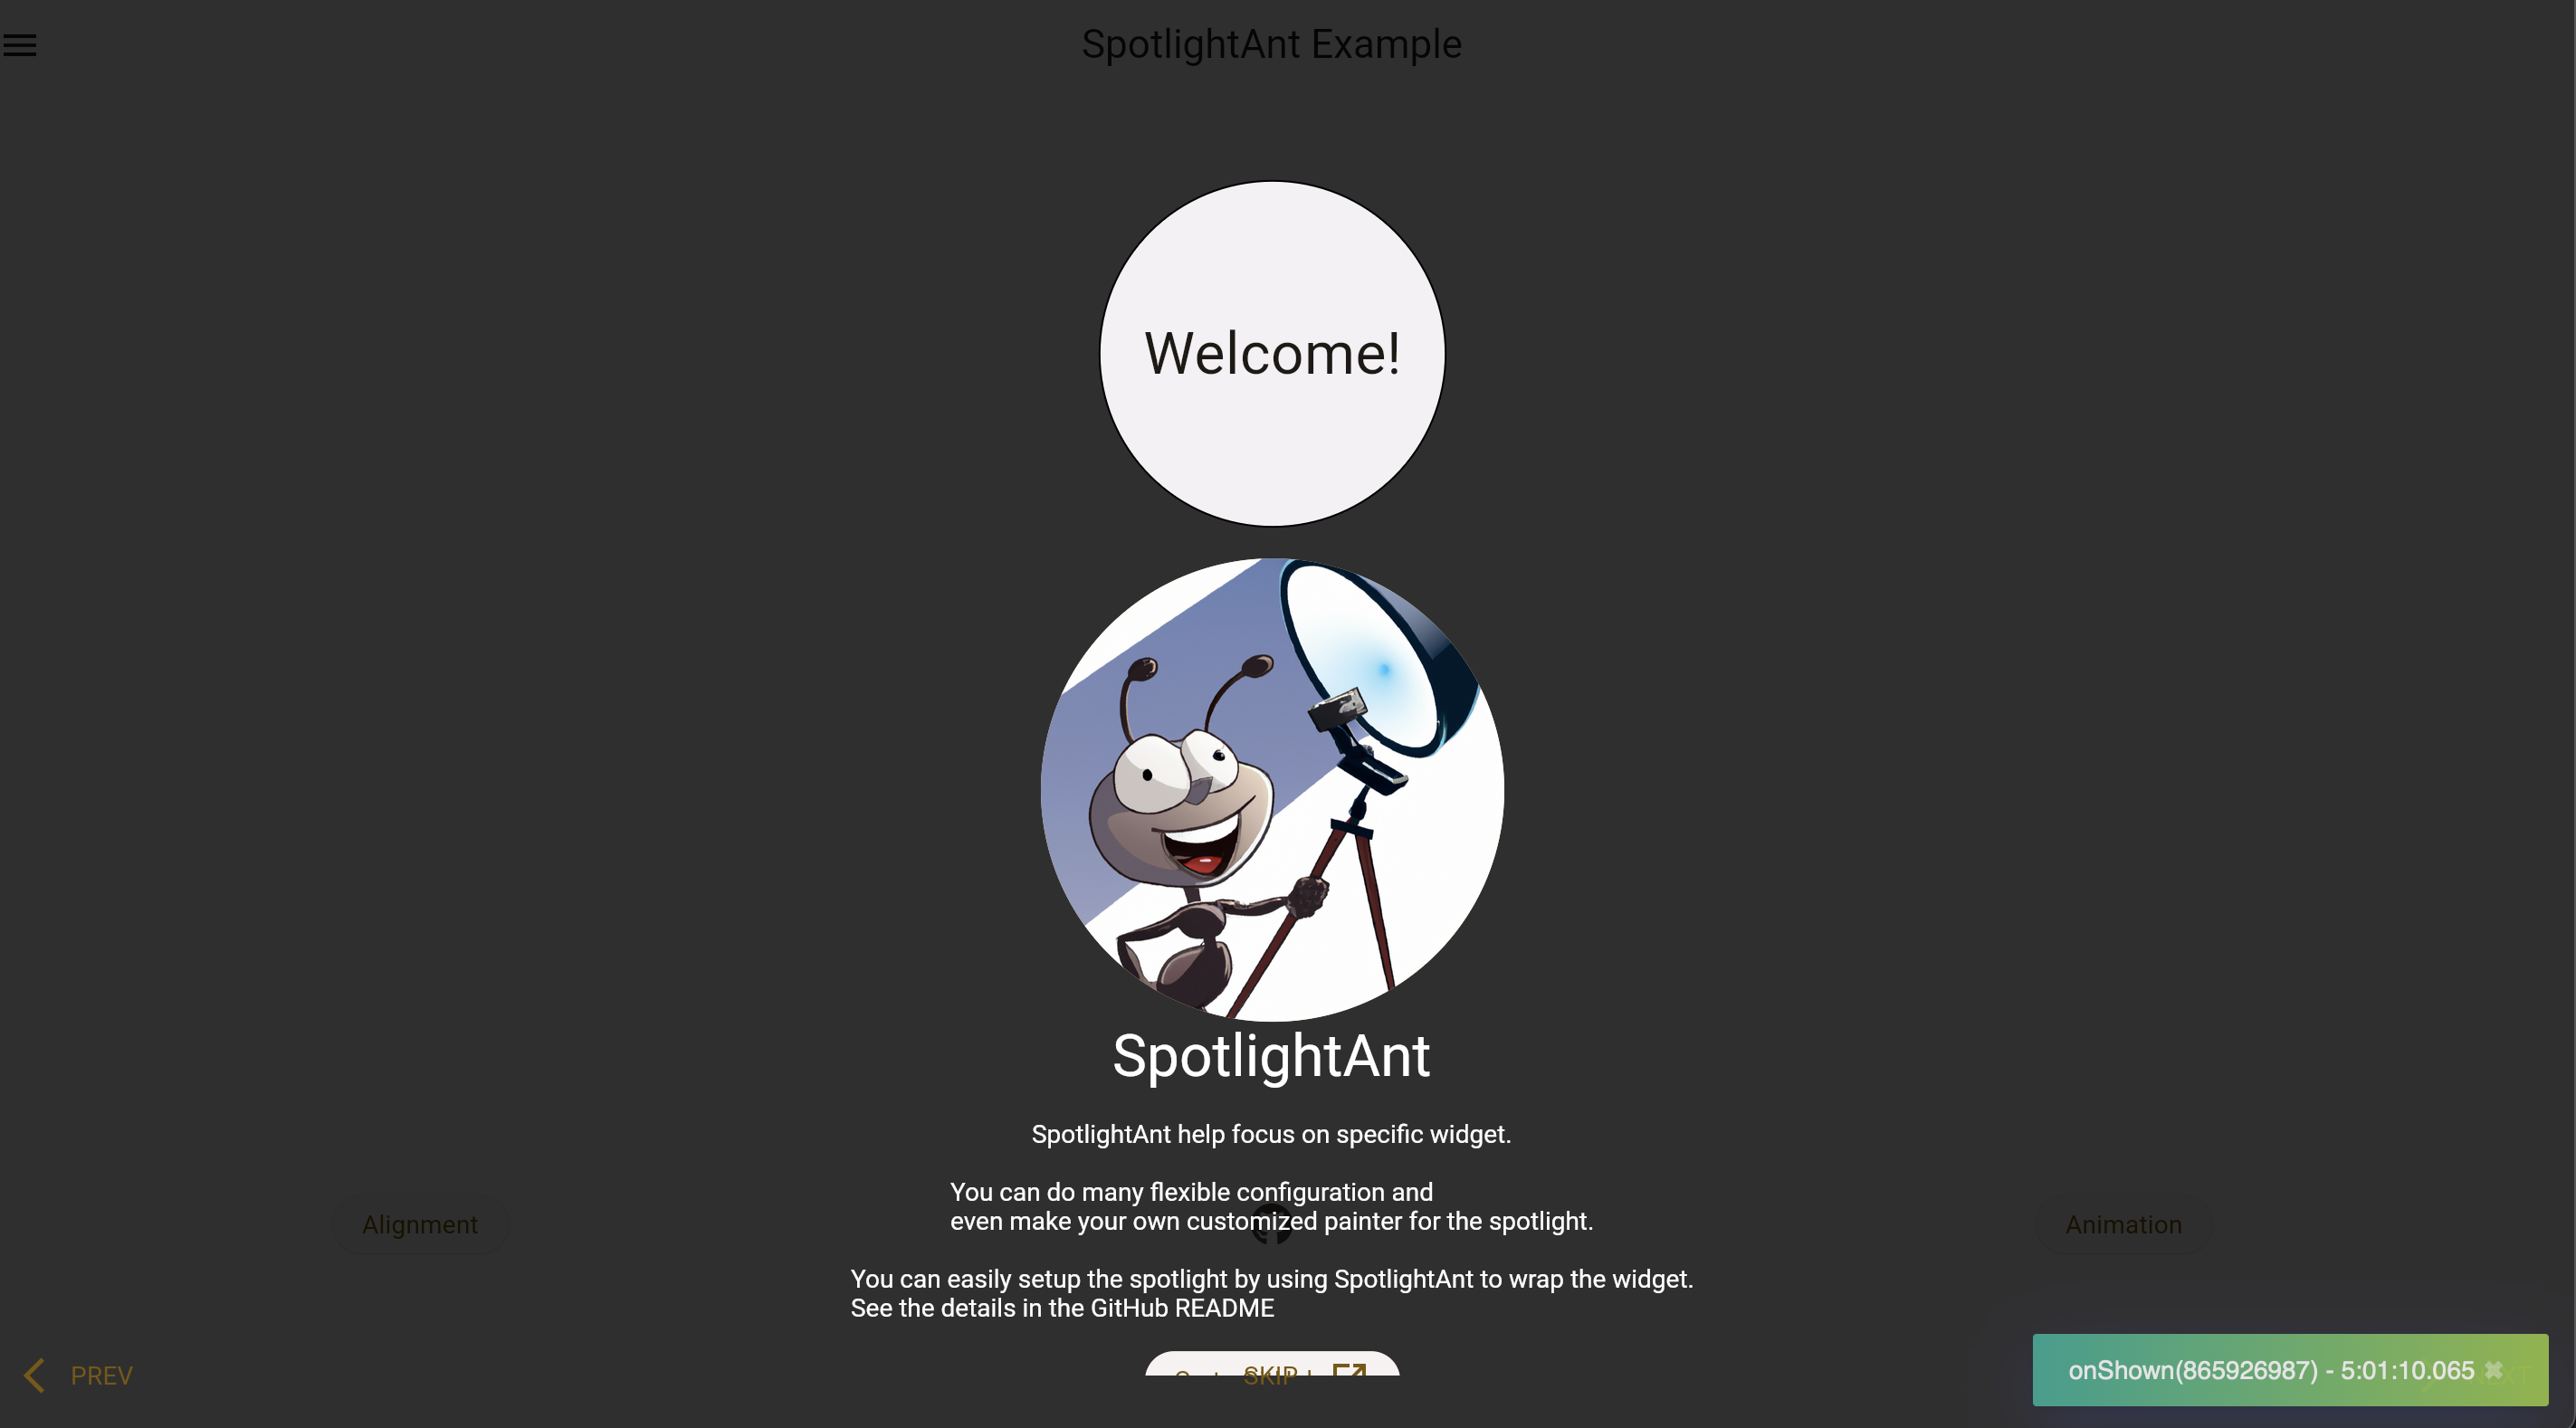 SpotlightAnt